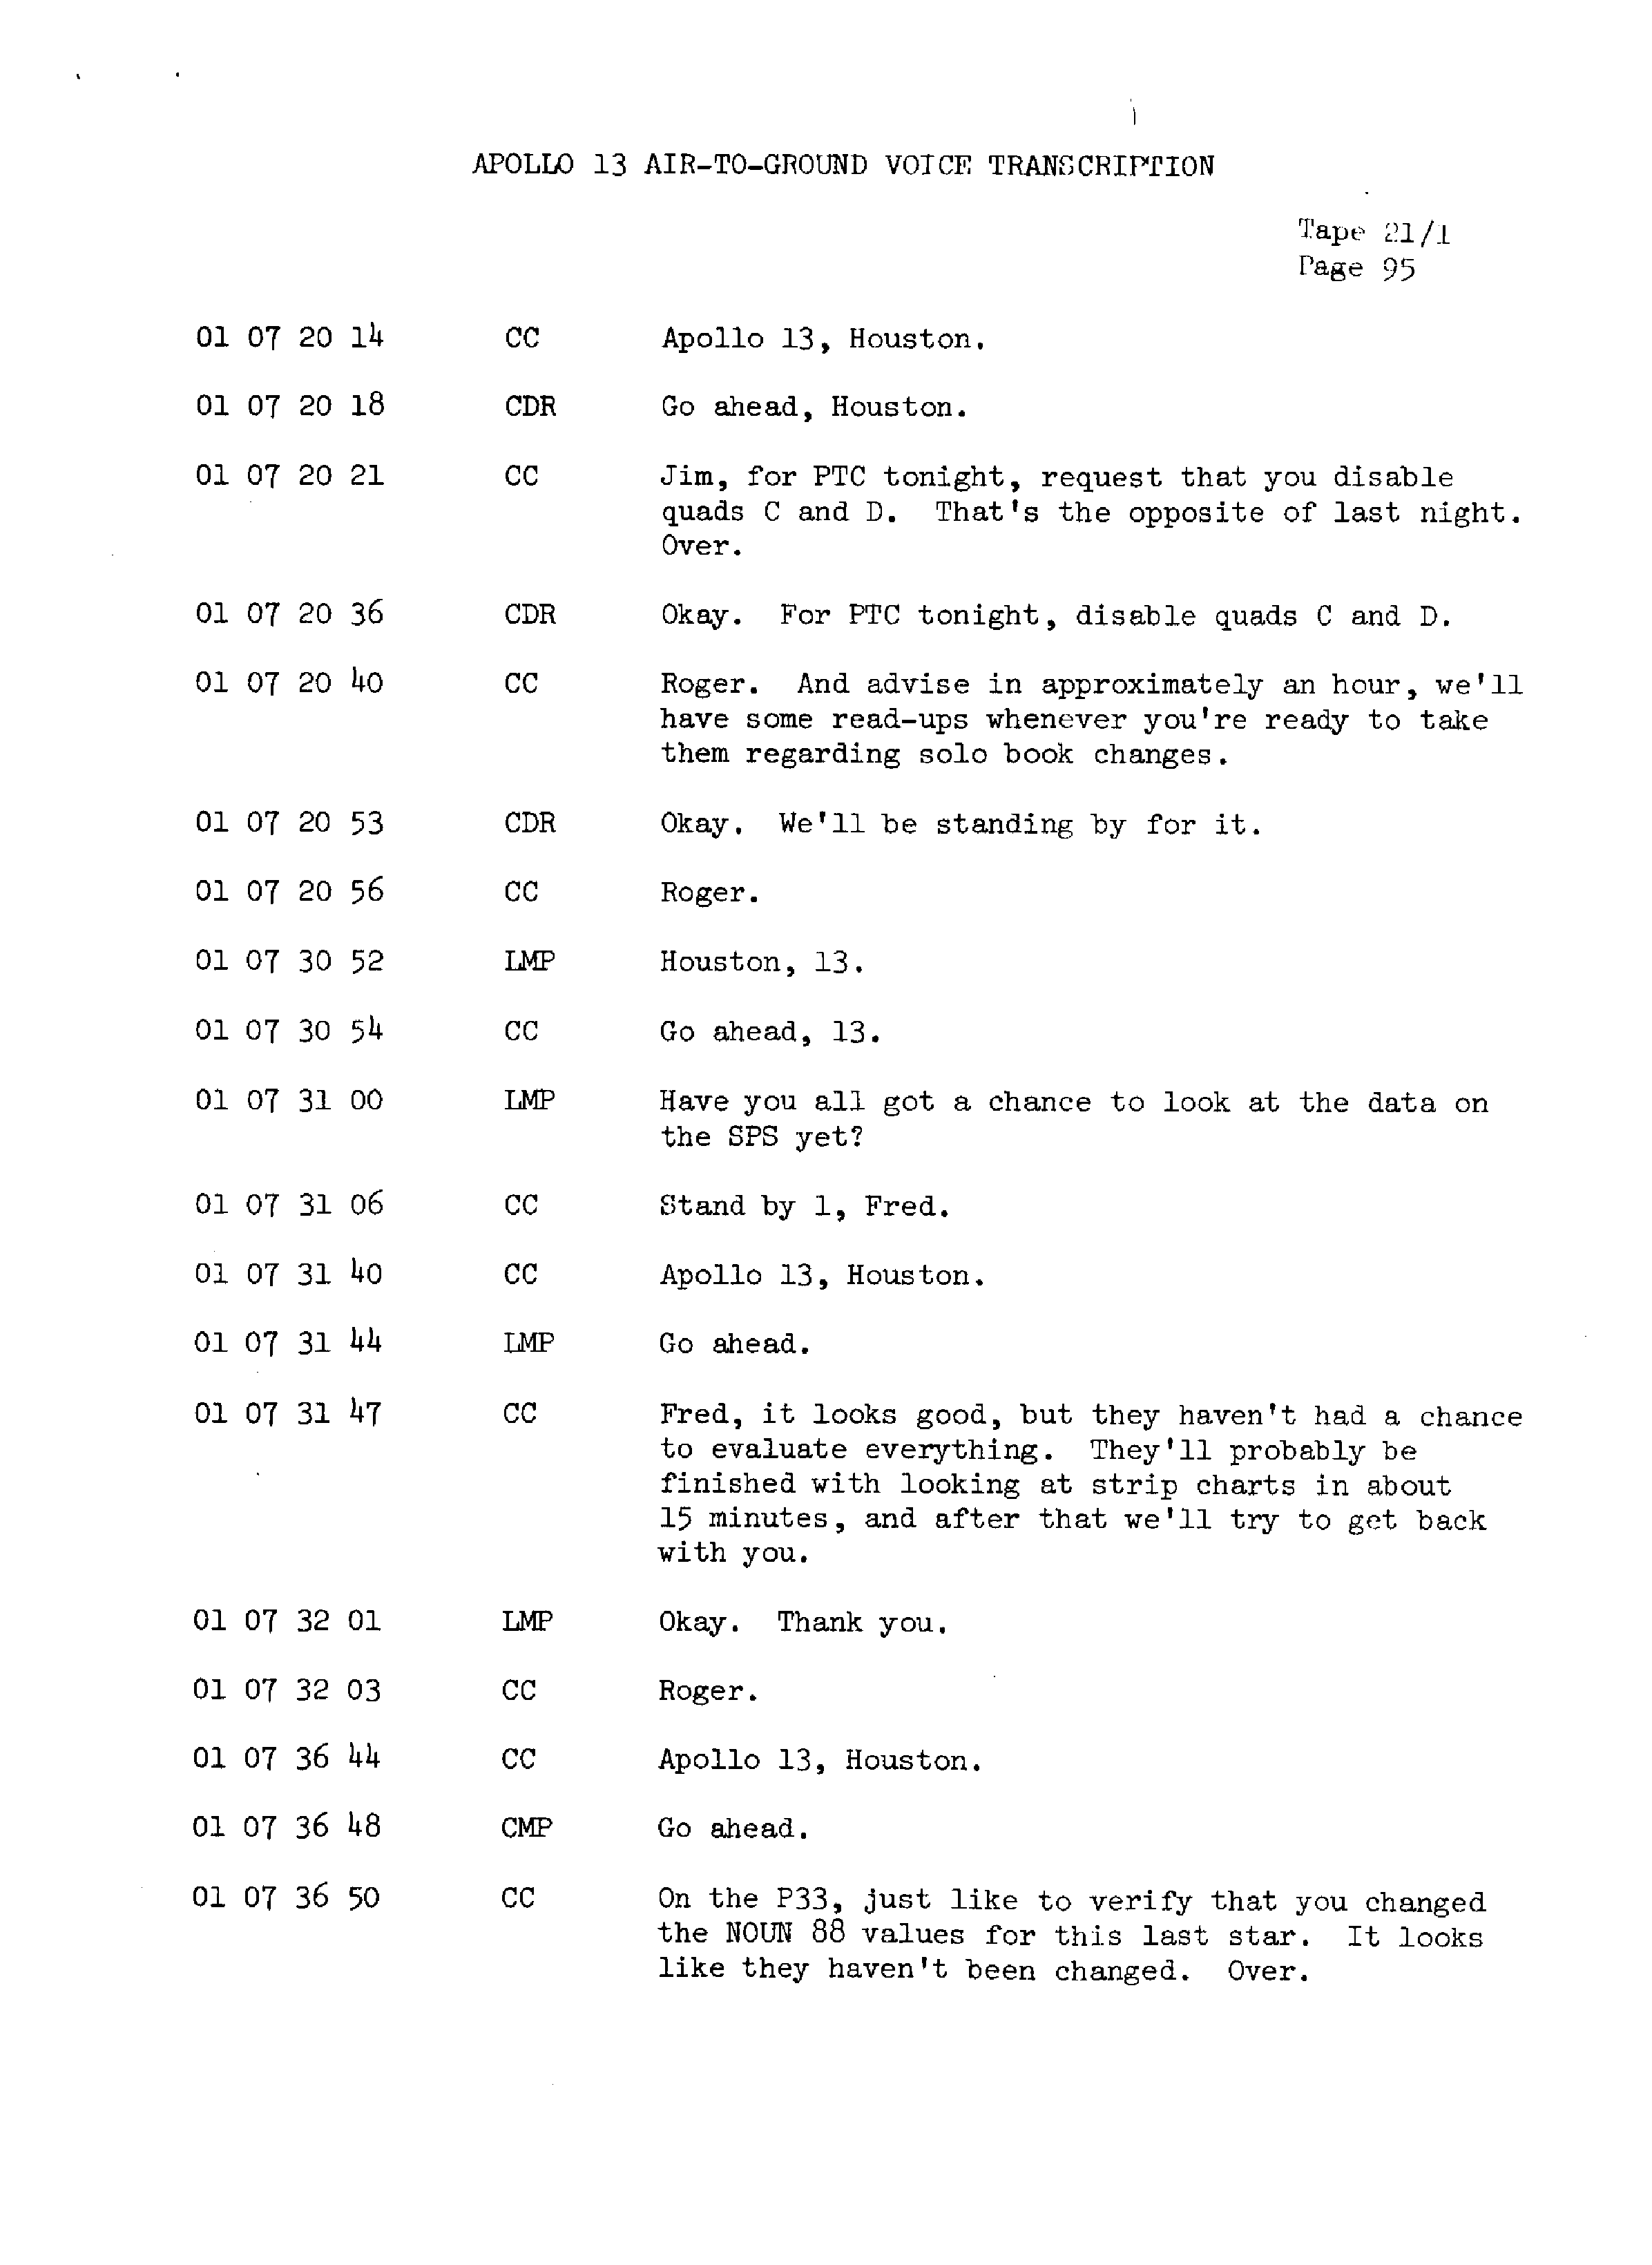 Page 102 of Apollo 13’s original transcript